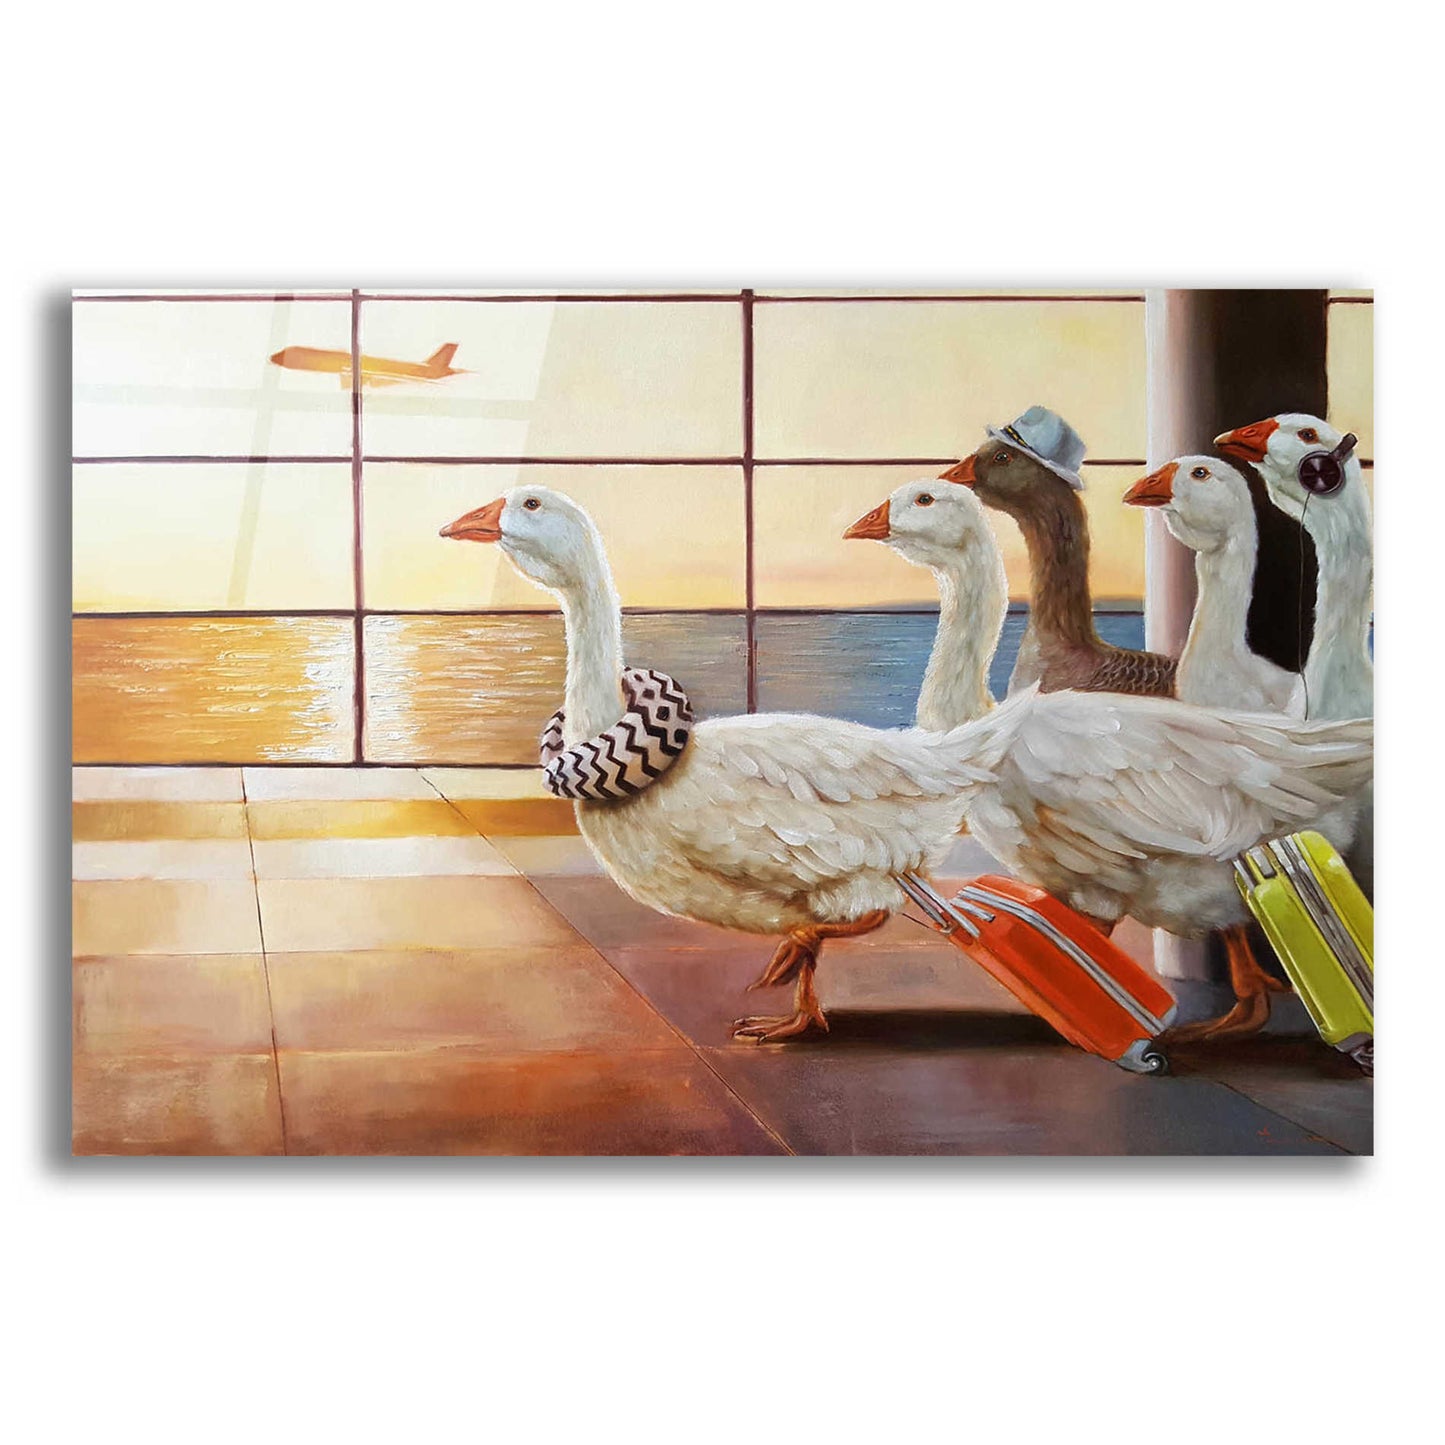 Epic Art 'First Class Migration' by Lucia Heffernan, Acrylic Glass Wall Art,24x16